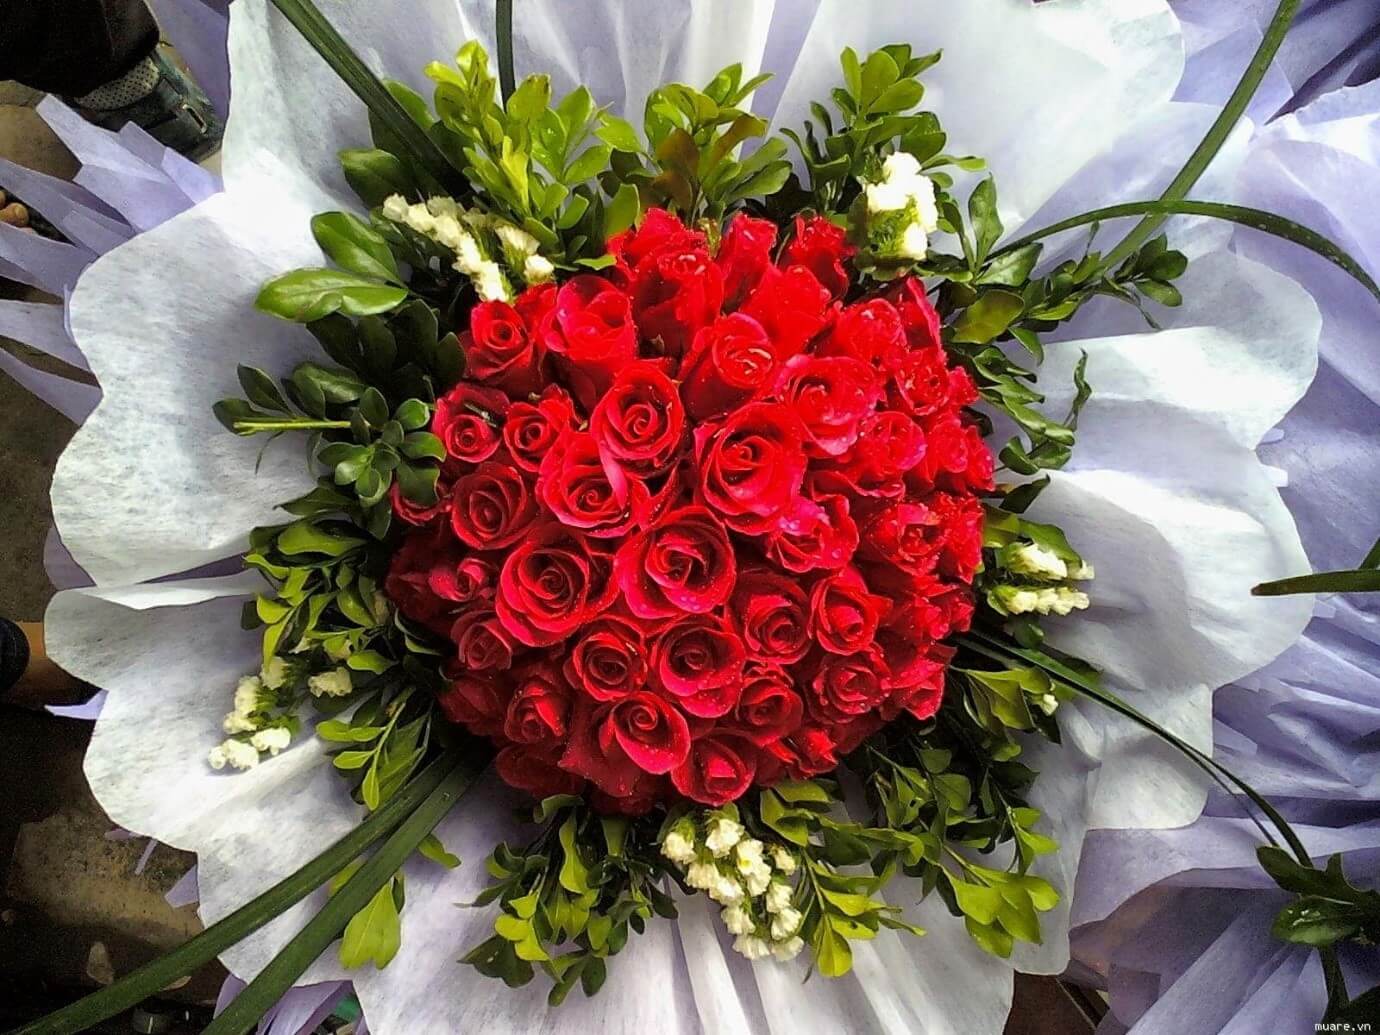 Bó hoa là món quà đầy tình cảm và ý nghĩa. Tại hình ảnh này, chúng tôi xin giới thiệu đến bạn những bó hoa đẹp nhất, được cắm từ những loại hoa tươi tuyệt đẹp.